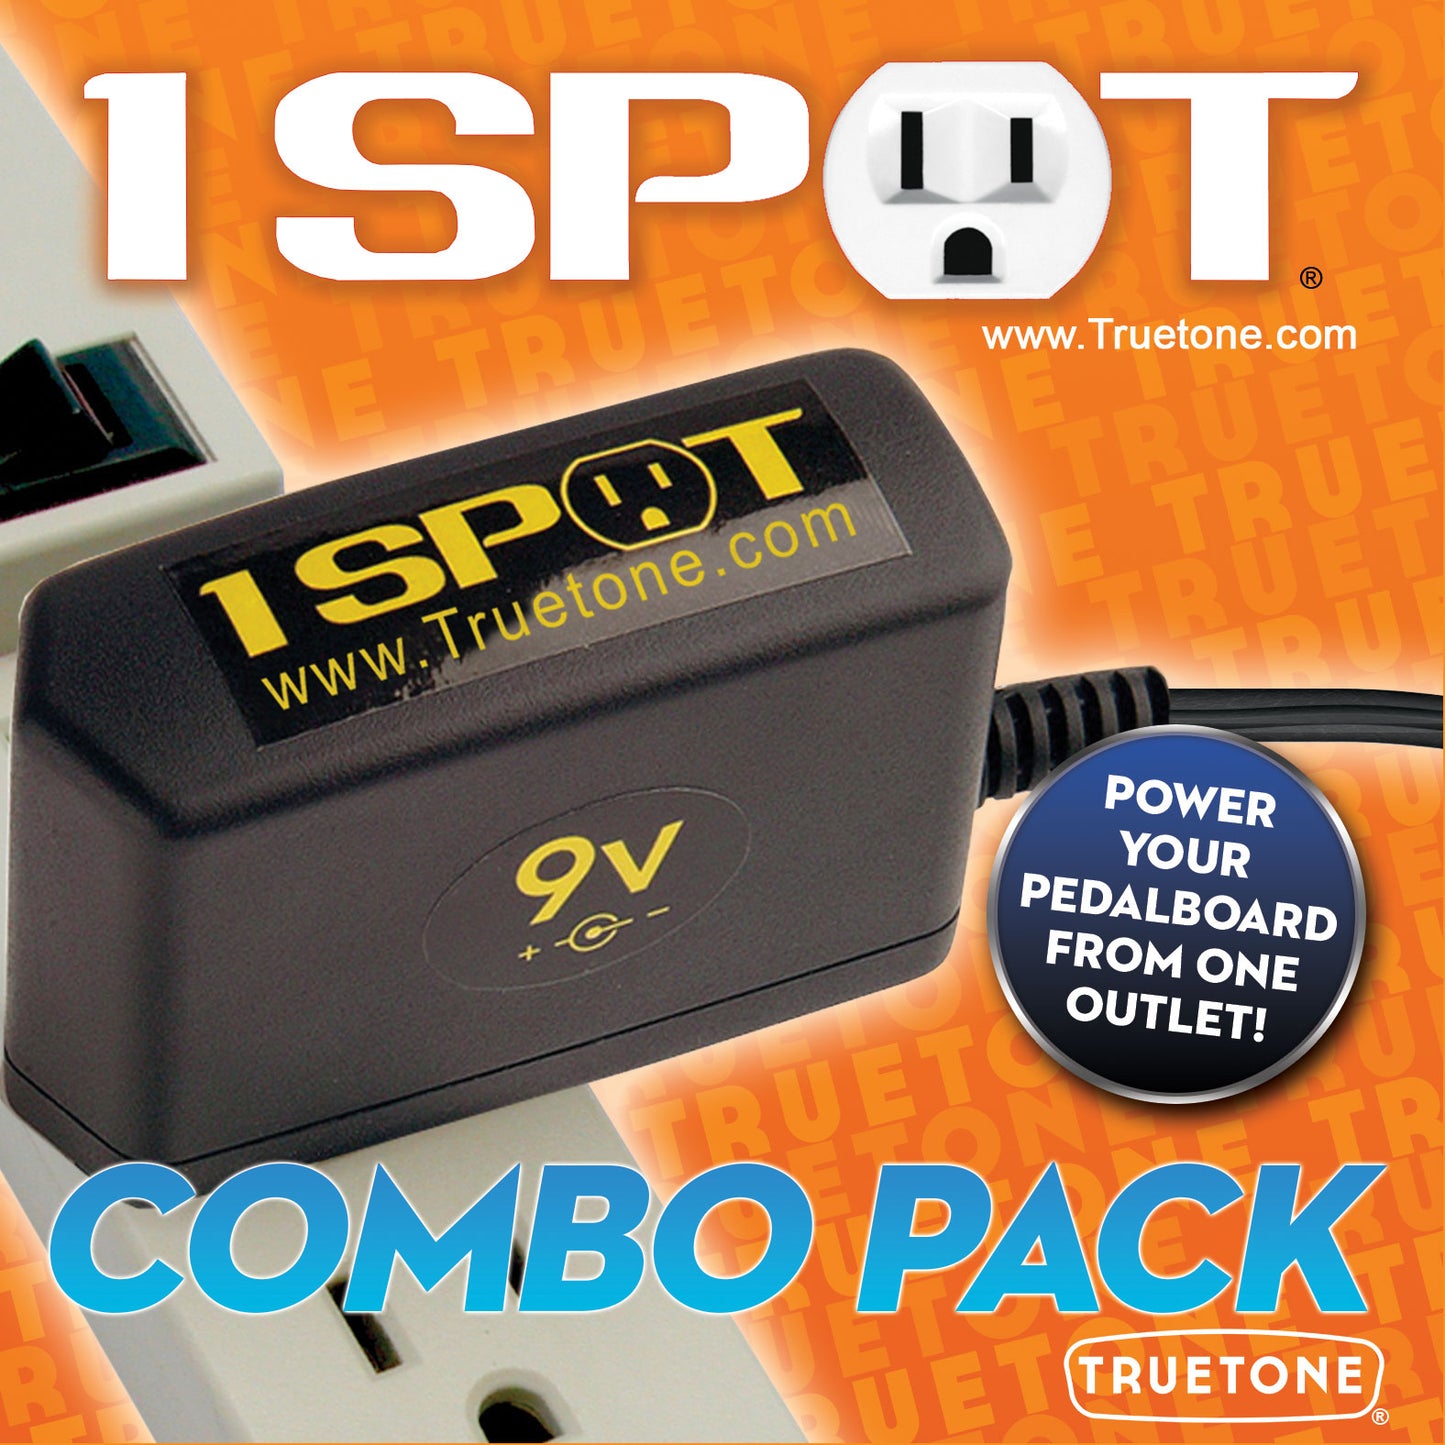 1SPOT Combo Pack